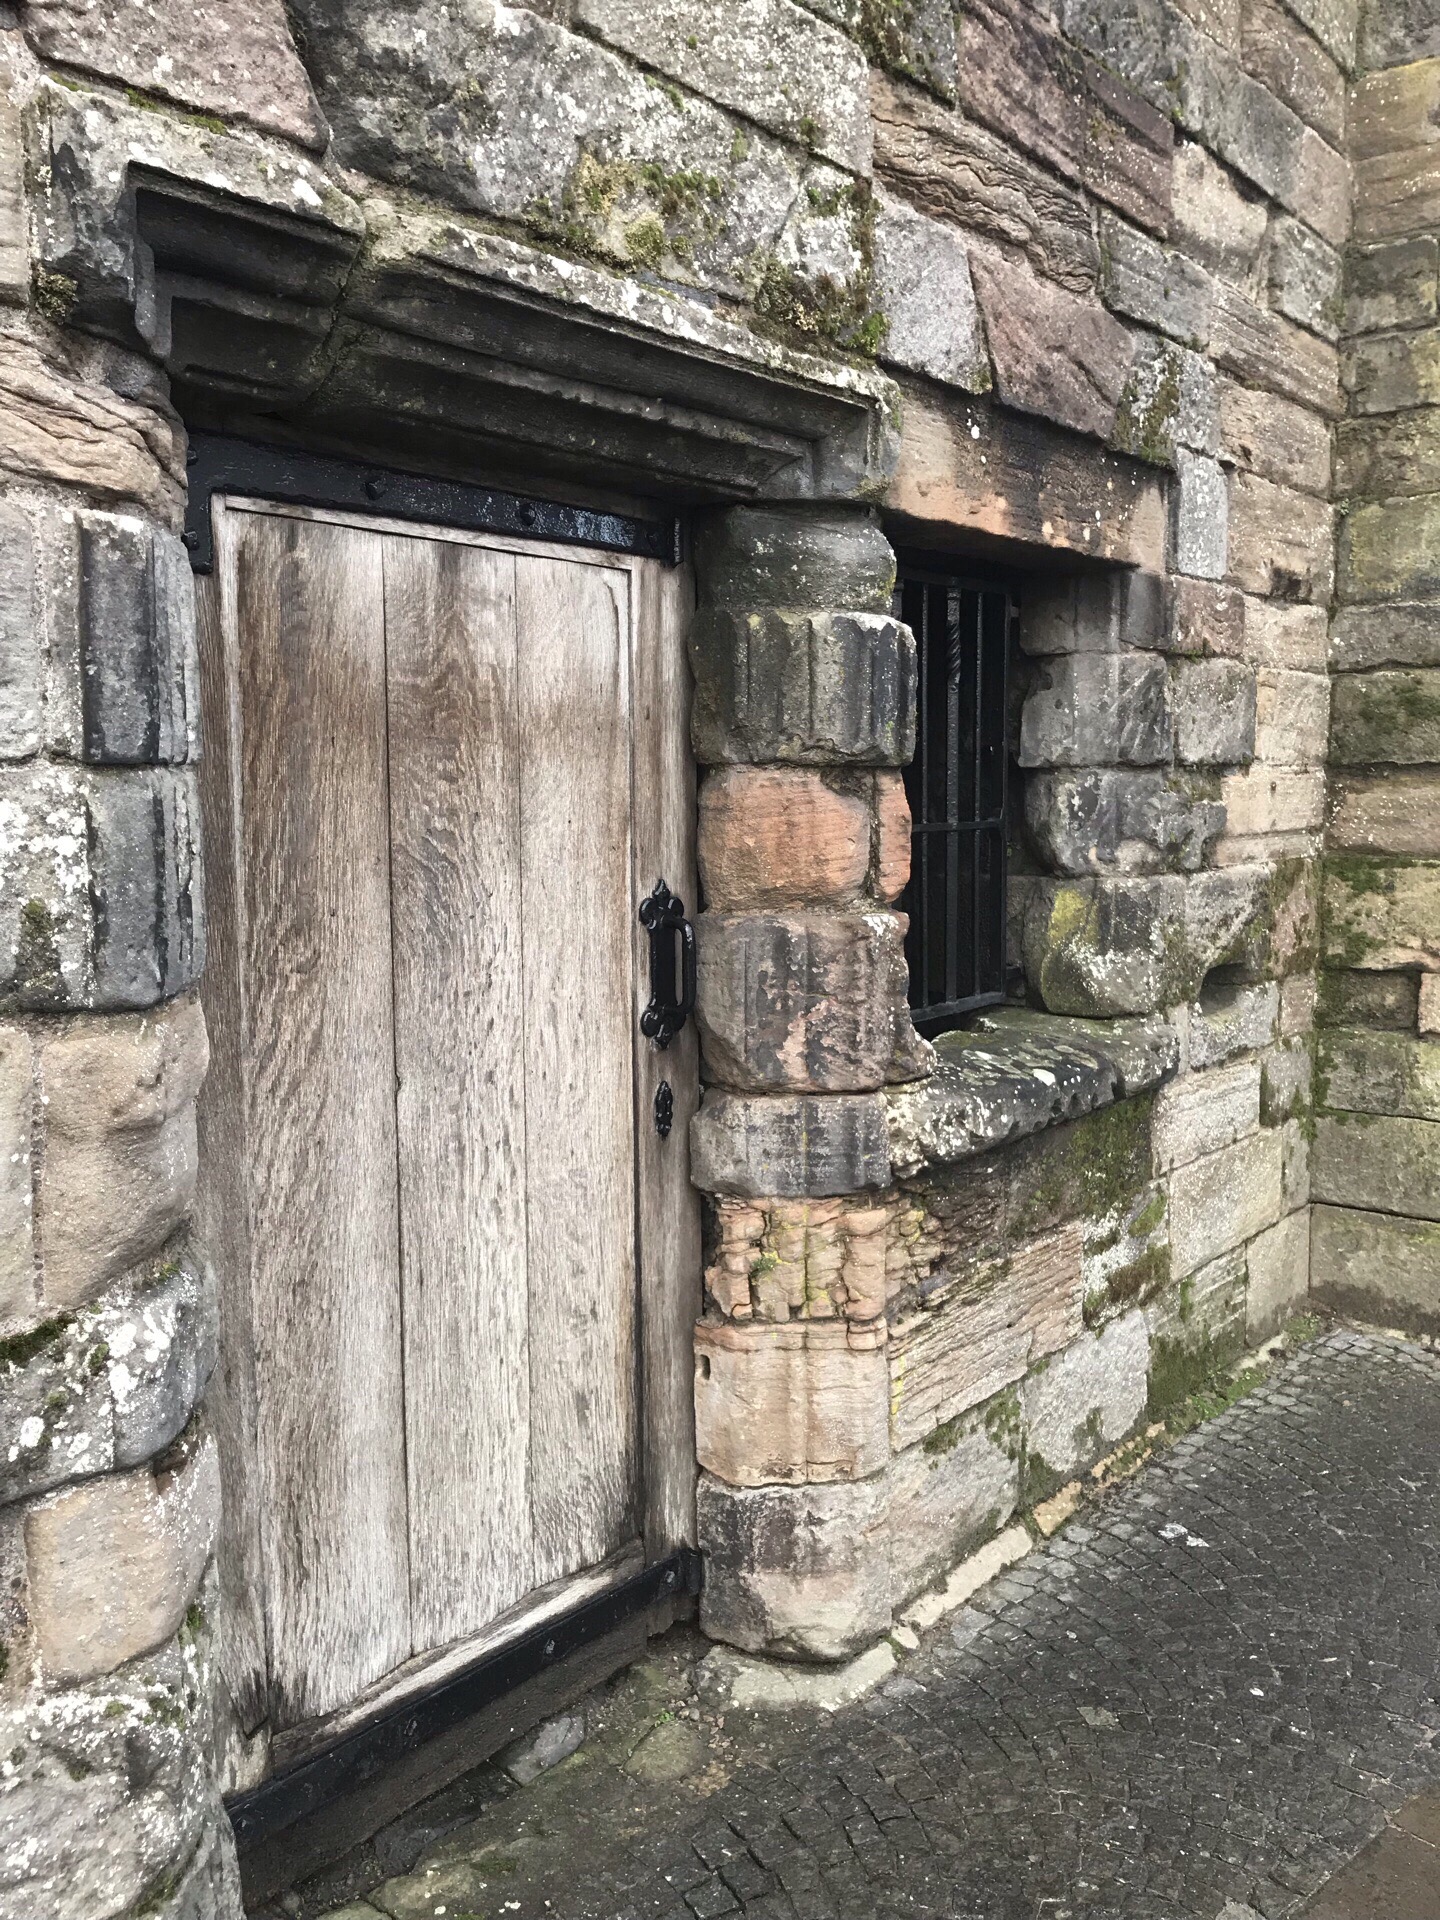 下火车步行去斯特灵城堡的路上，一定会路过老城监狱，斑驳的铁窗、浸渍着历史的原石砌墙，无不述说着统治者